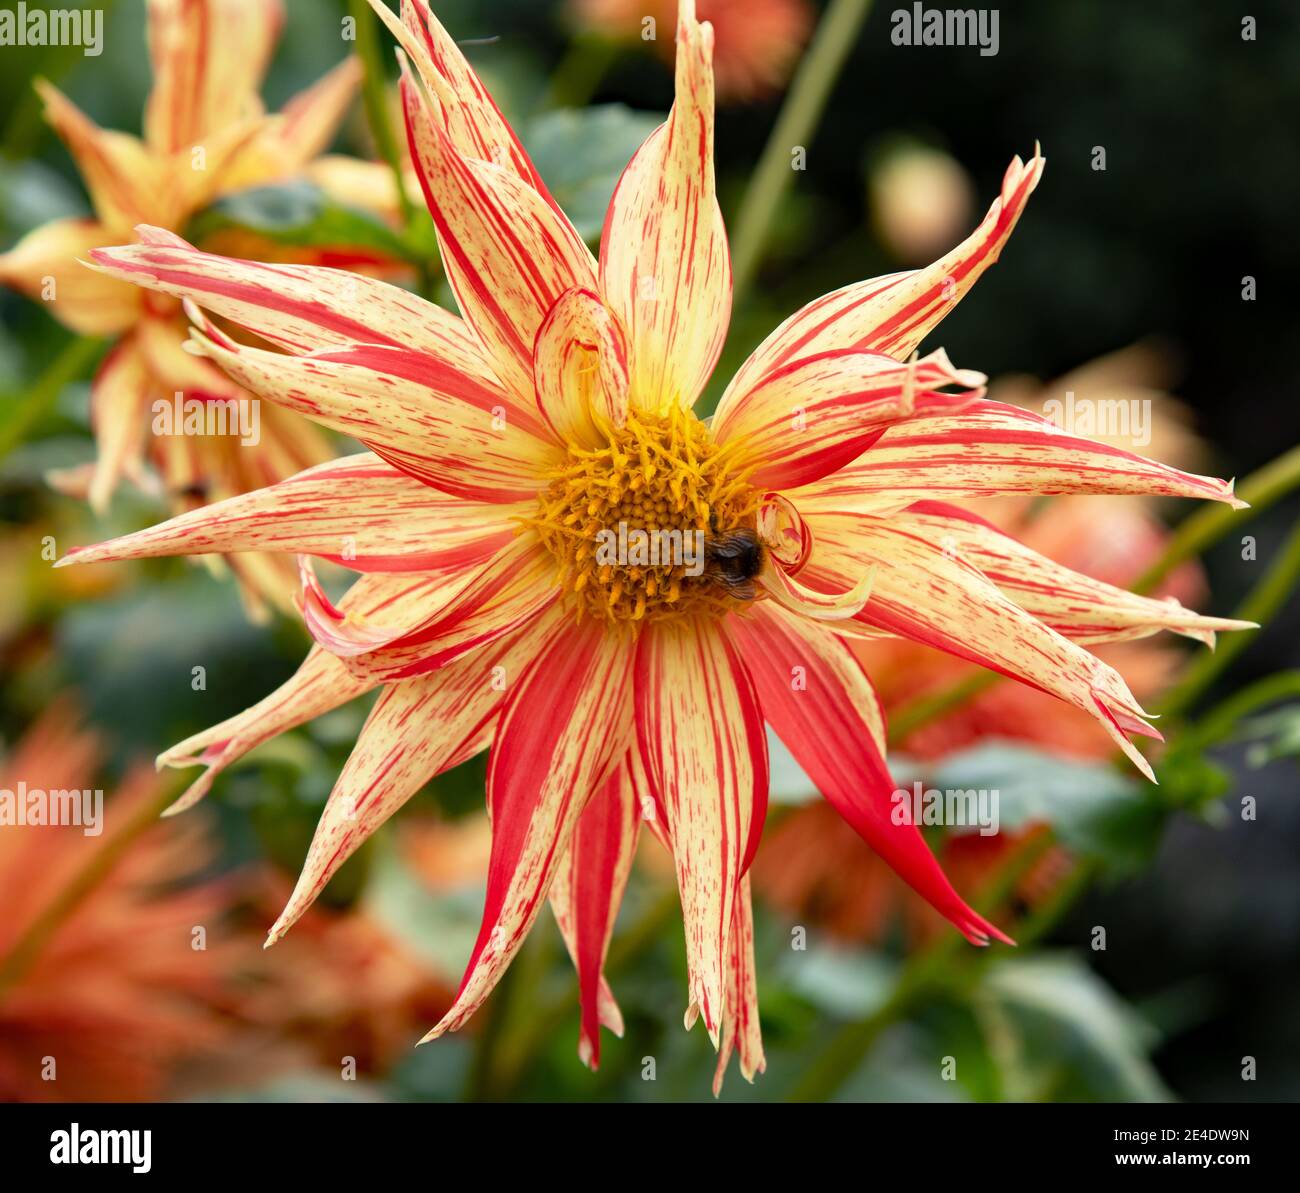 Beautiful flower Dahlia Rejmans Firecracher blossom in the garden Stock Photo